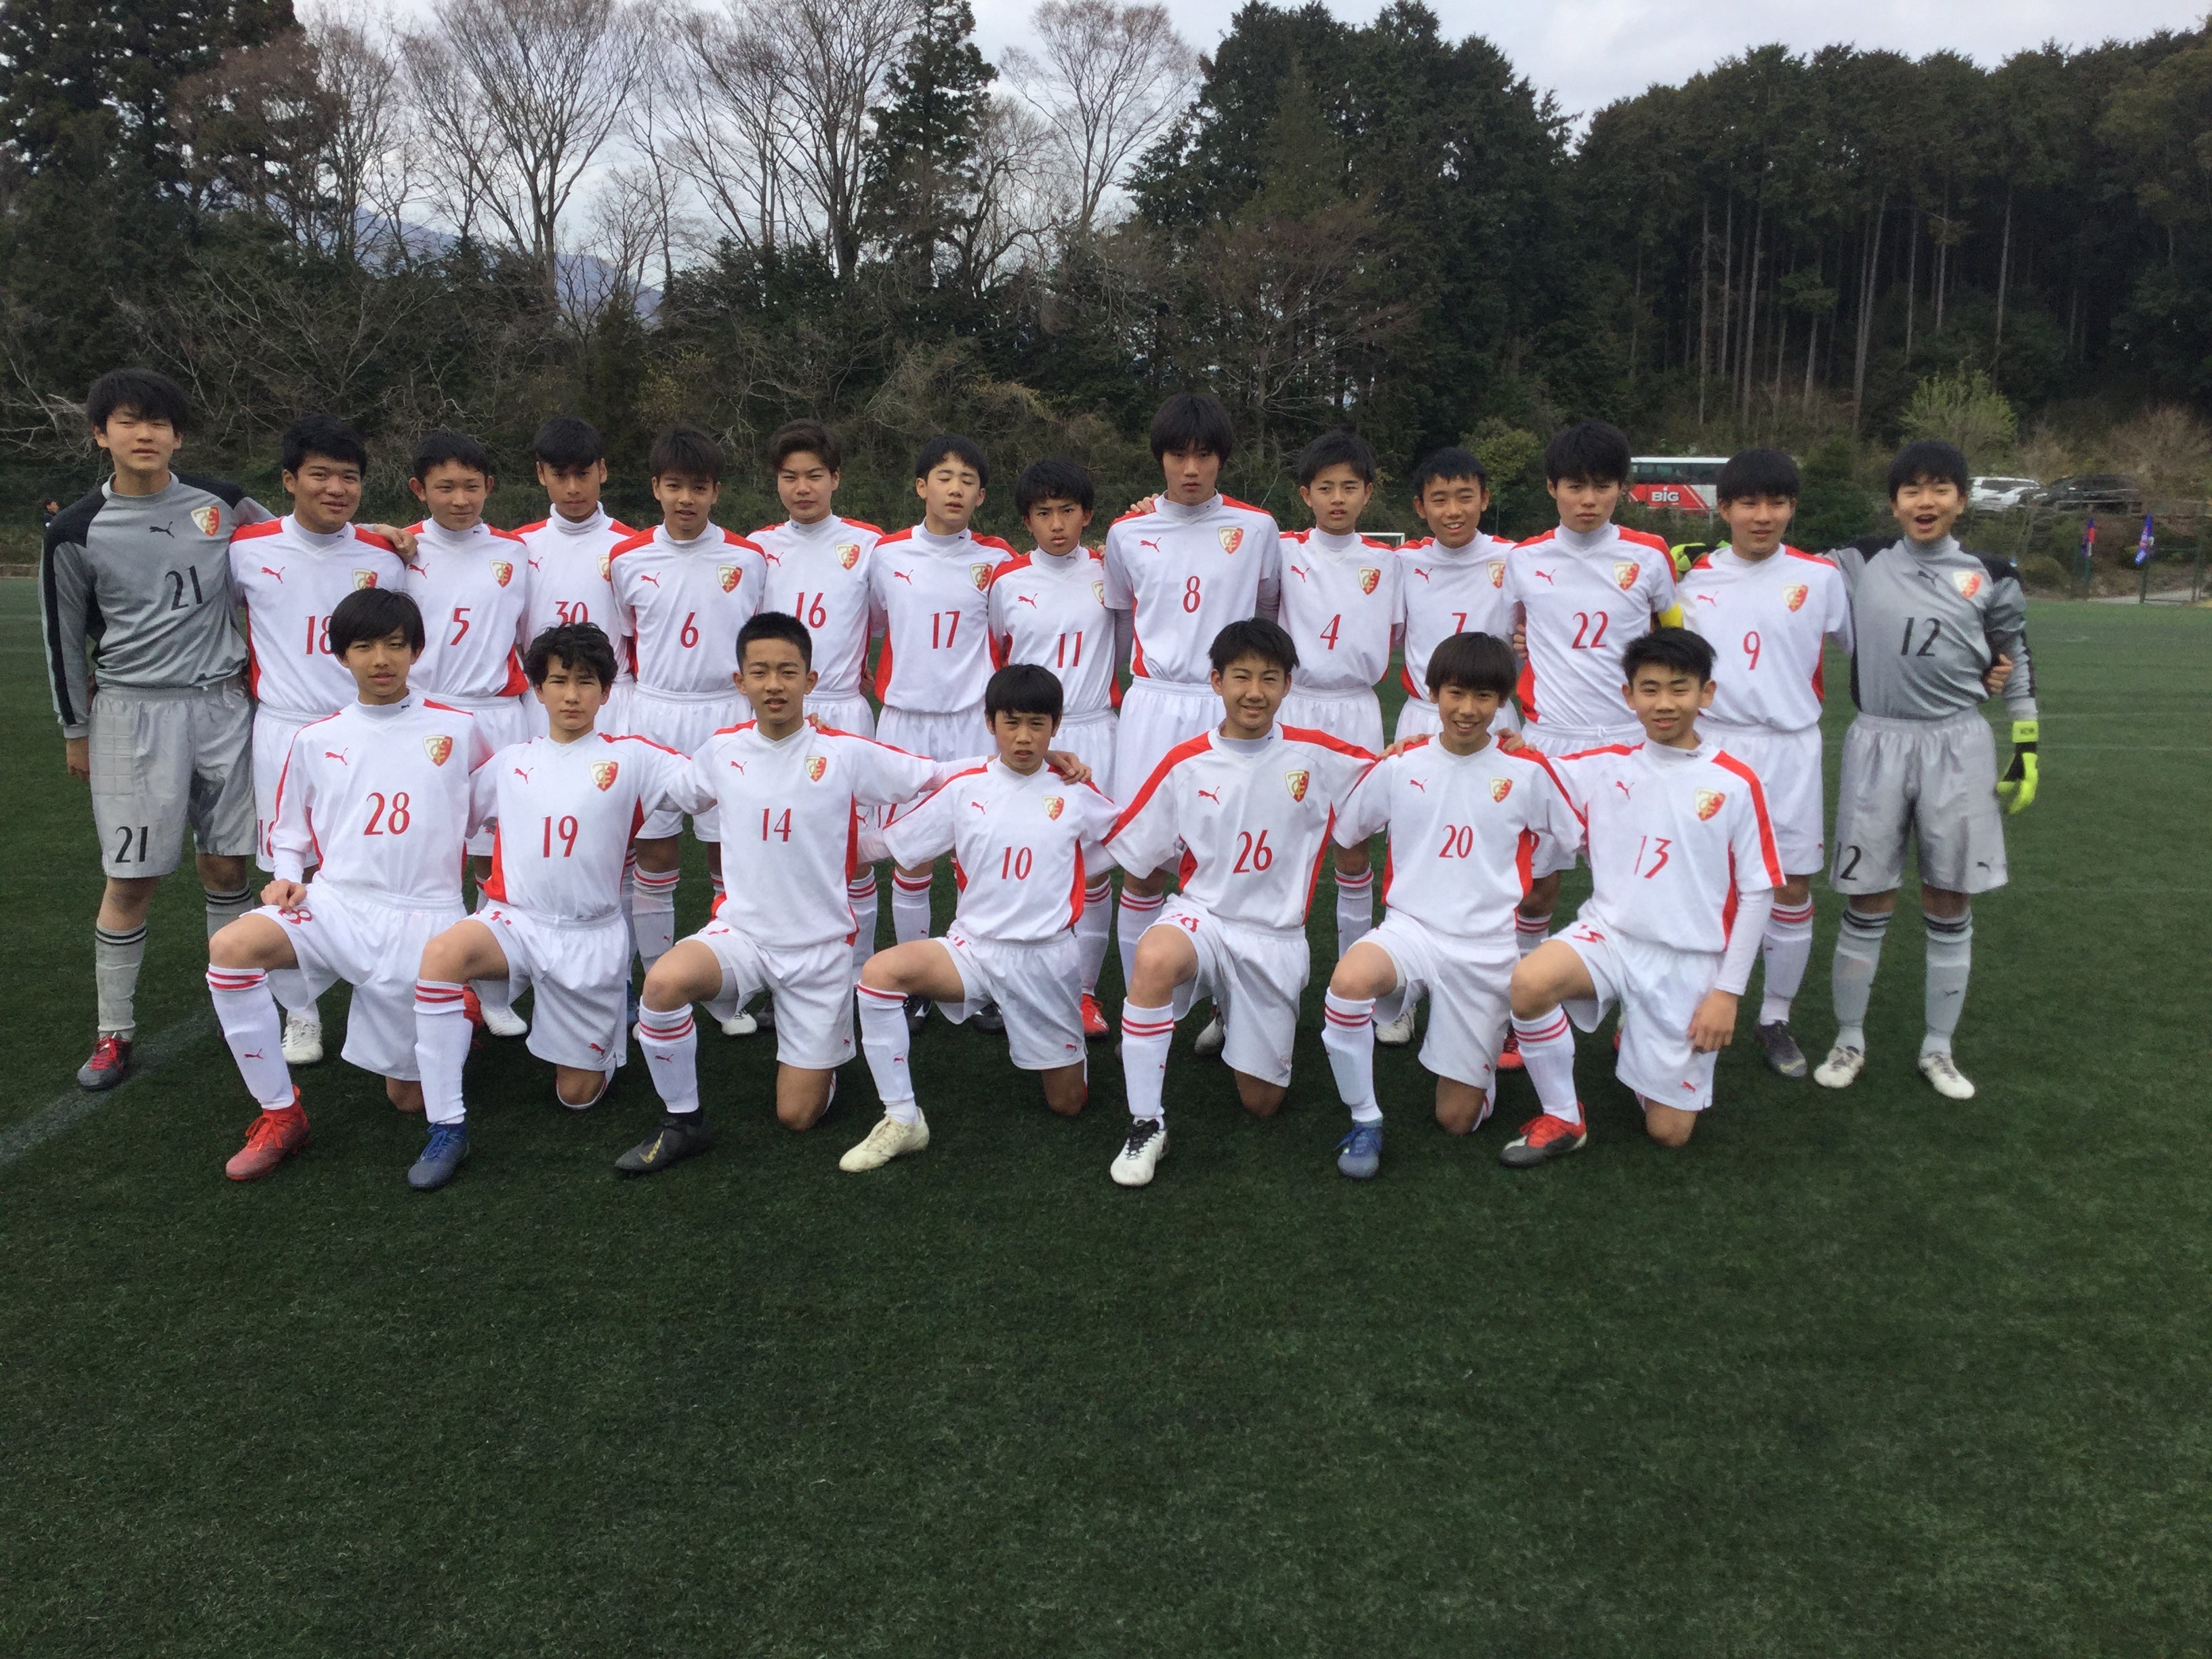 新u15 第22回 東京ガスカップ ジュニアユースサッカーフェスティバル 2日目 Fcトレーロス公式ブログ Fc Toreros Official Blog